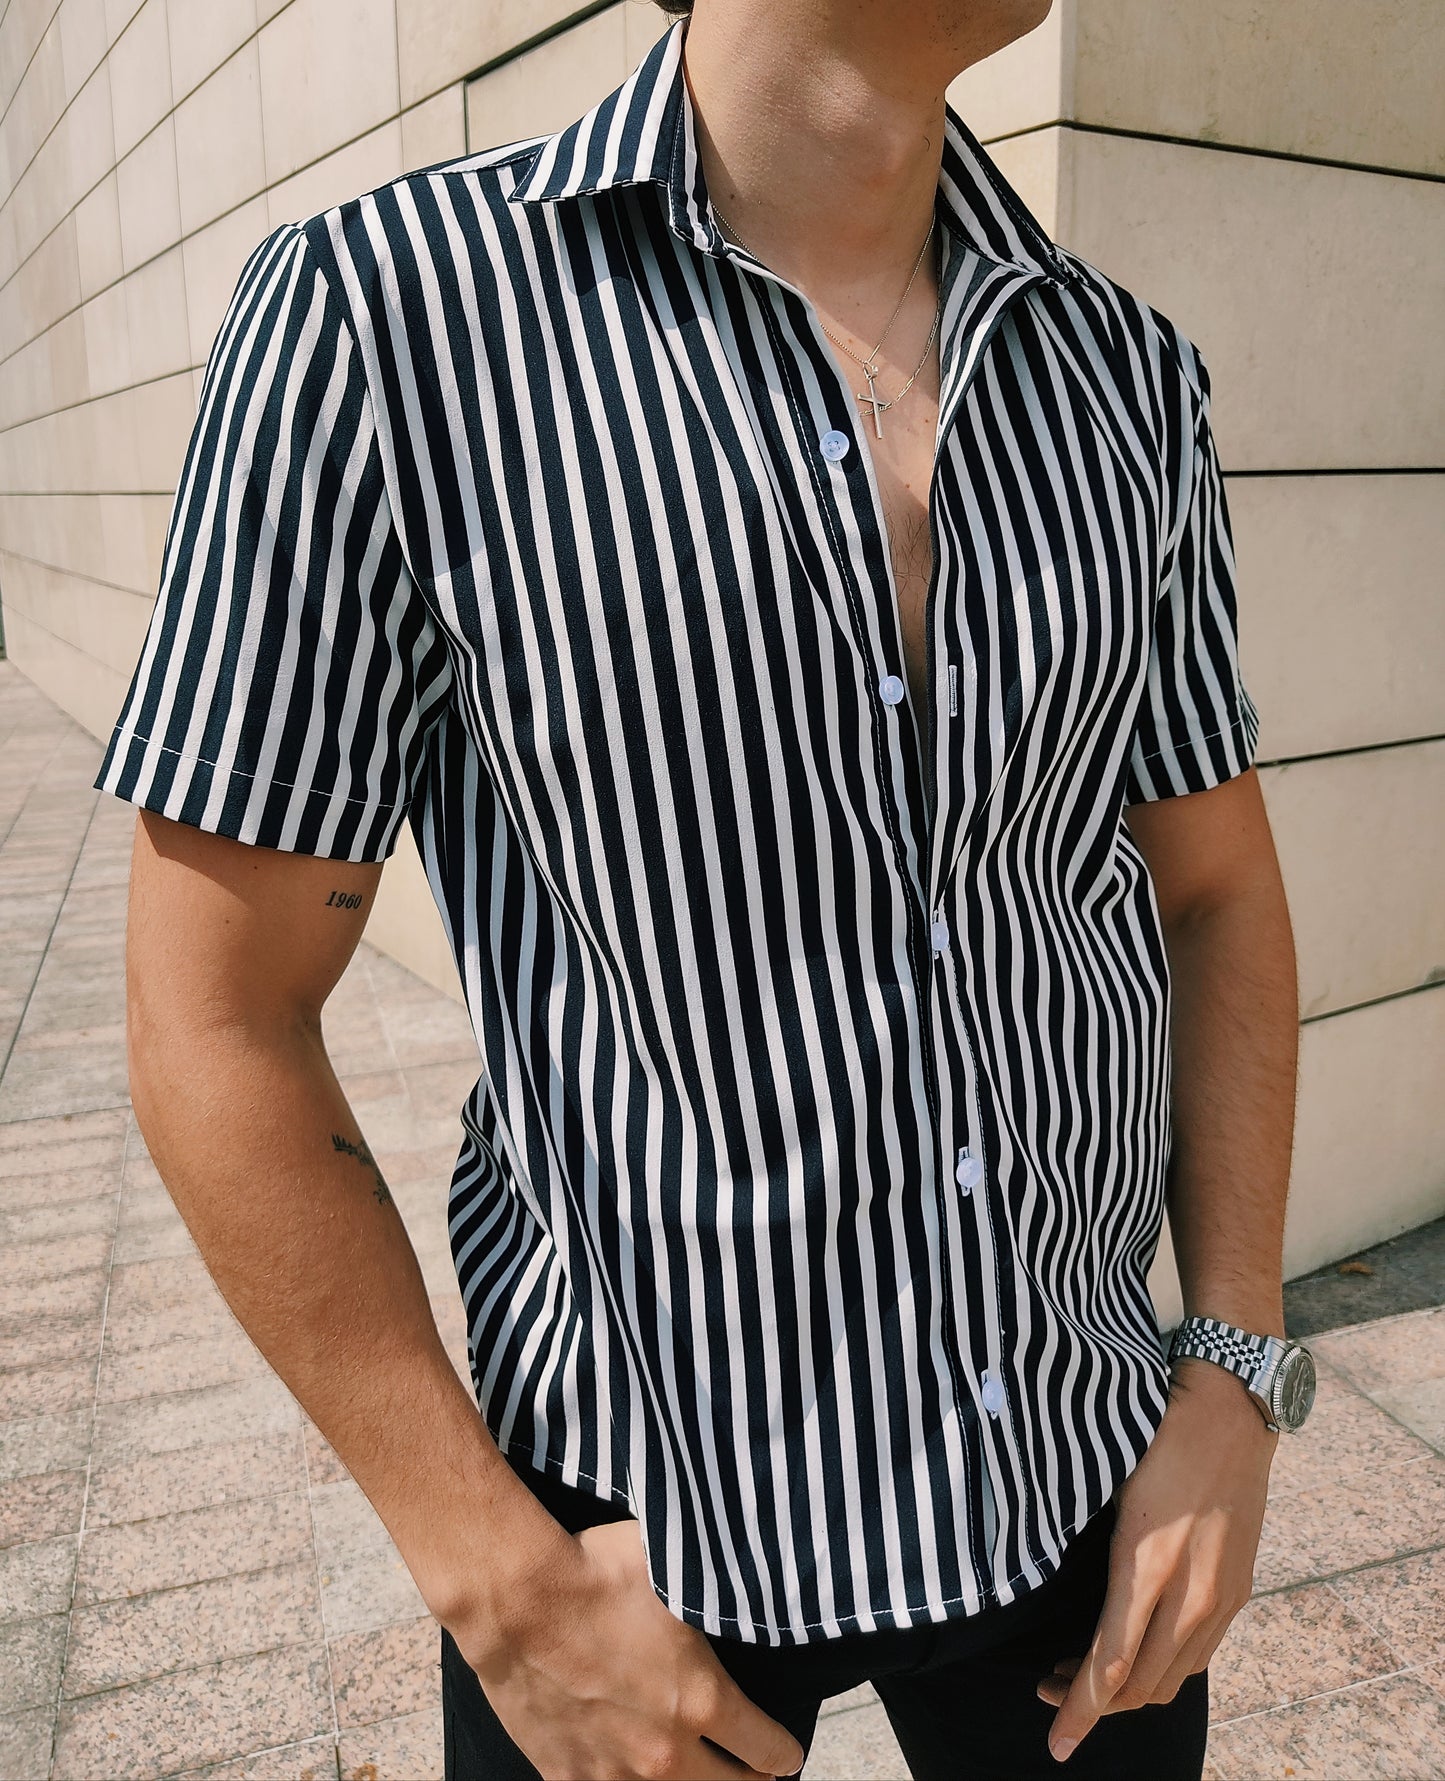 Palacio de los niños explique Reconocimiento Camisa A Juego De Rayas De Color Para Hombres Camisas 2019 Nueva Moda De  Verano Para Hombre Camisas De Manga Corta Para Hombre Blusa | islamiyyat.com